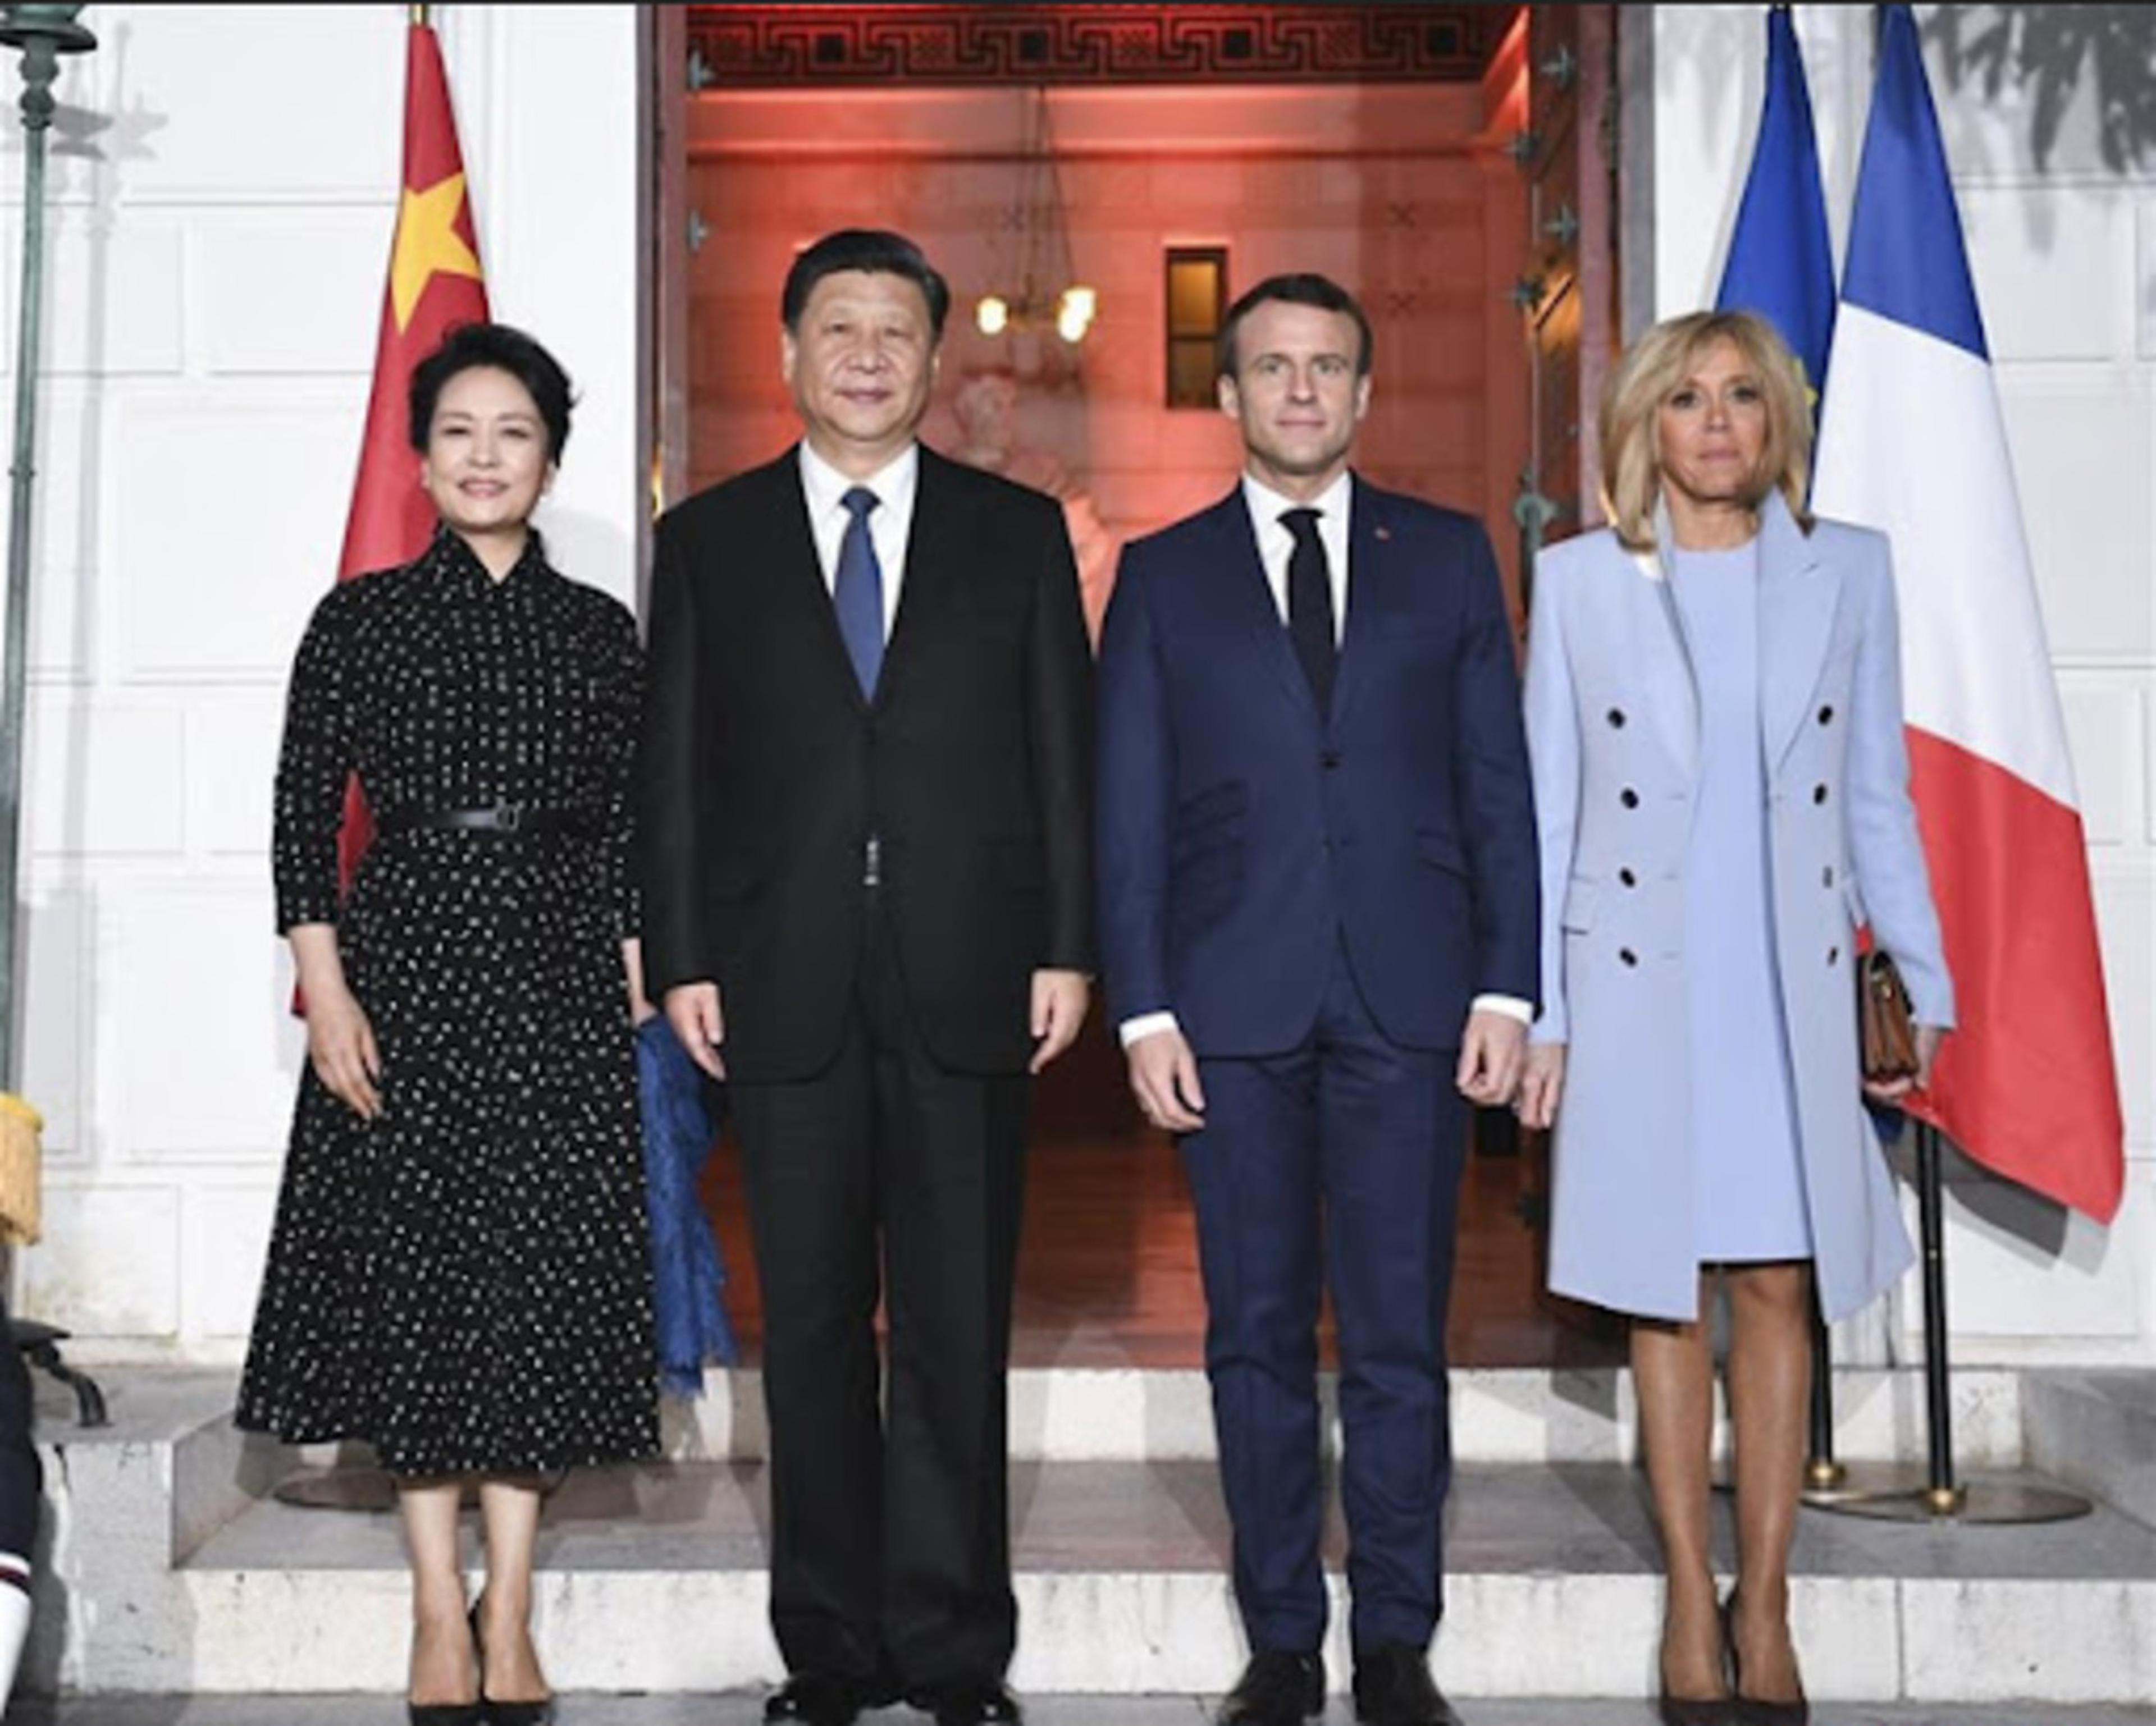 फ्रांस की स्टेट विज़िट पर चीन के राष्ट्रपति जिनपिंग, फ्रेंच राष्ट्रपति मैक्रों ने
यूक्रेन की मदद को बताया प्राथमिकता